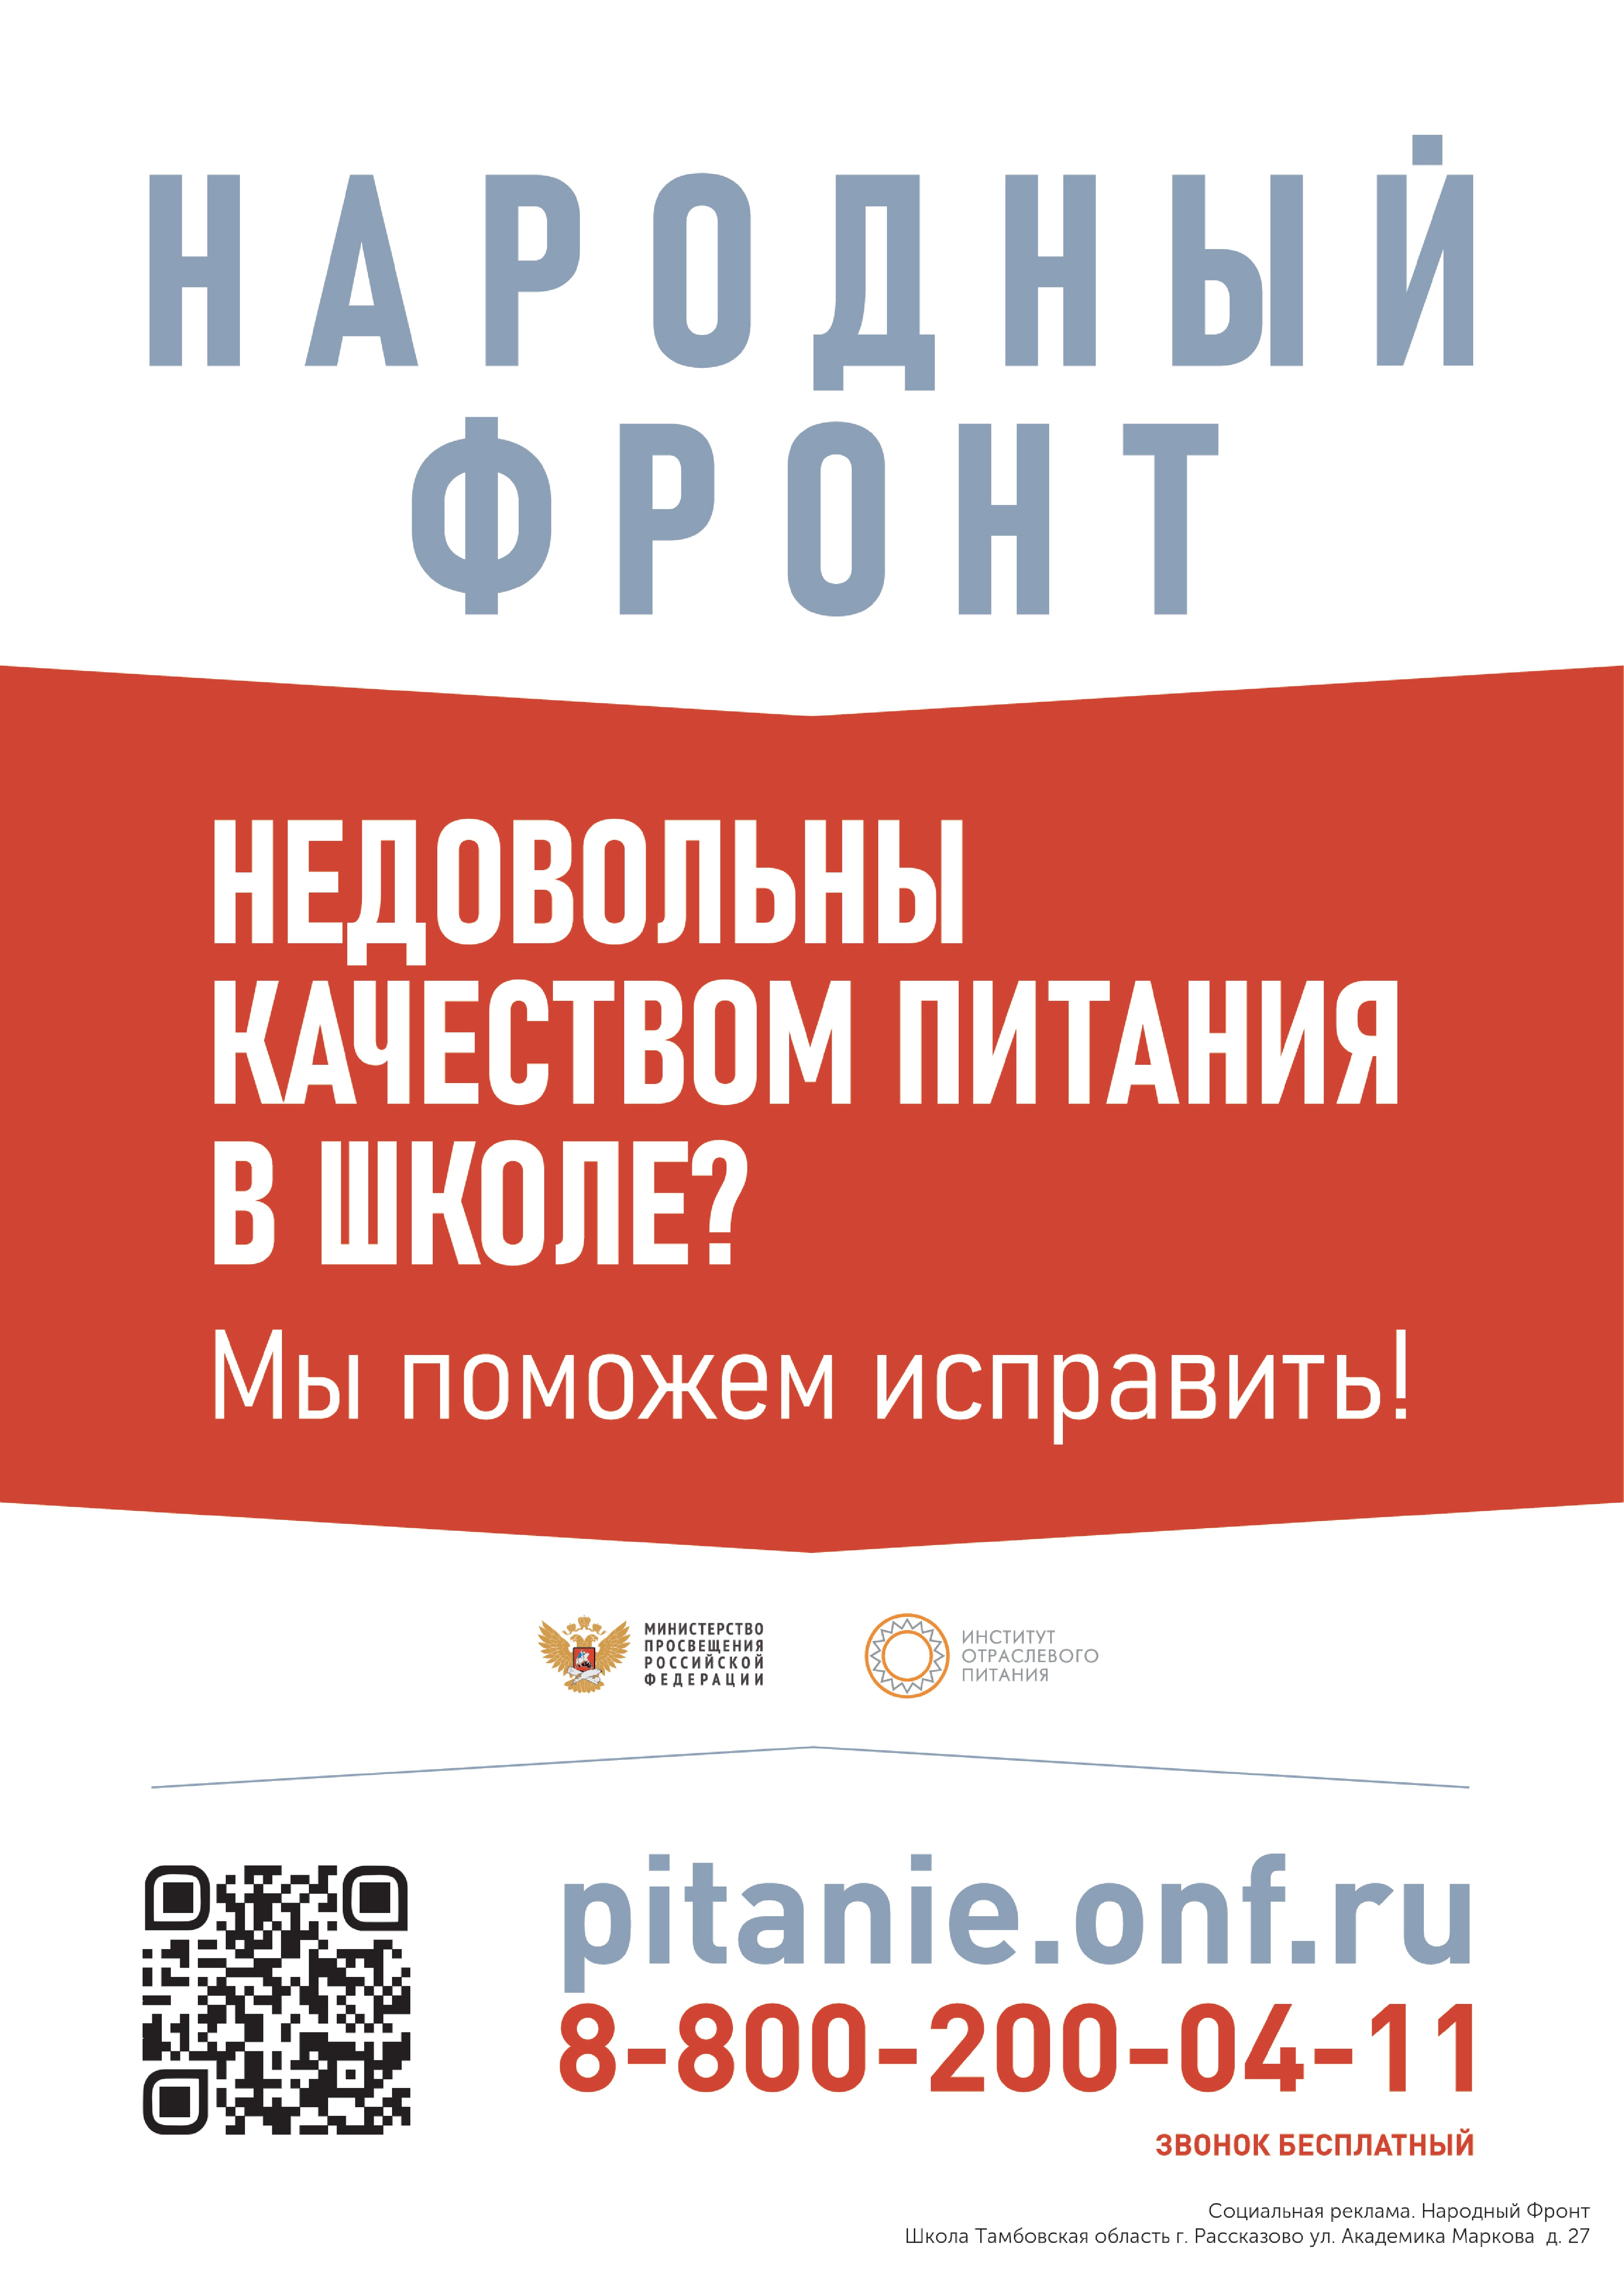 Баннер горячей линии Народного фронта и Министерства просвещения Российской Федерации